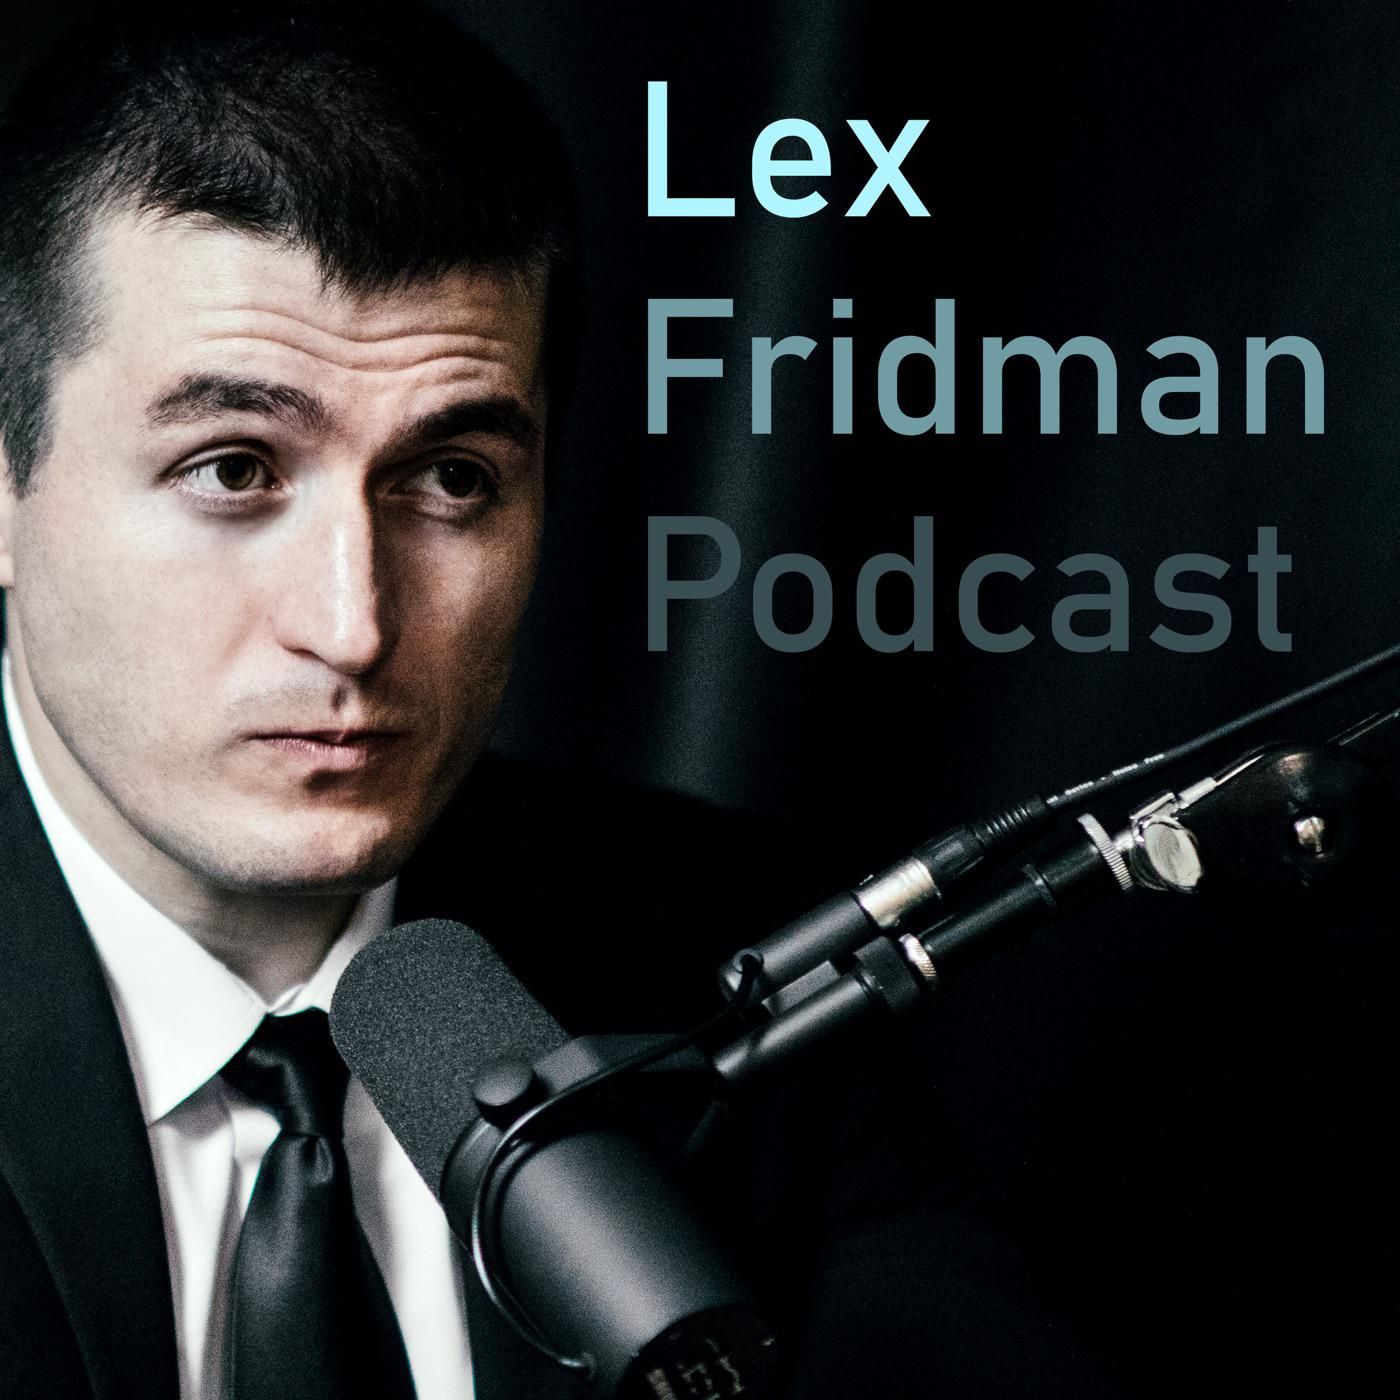 Lex Fridman - Lex Fridman added a new photo.